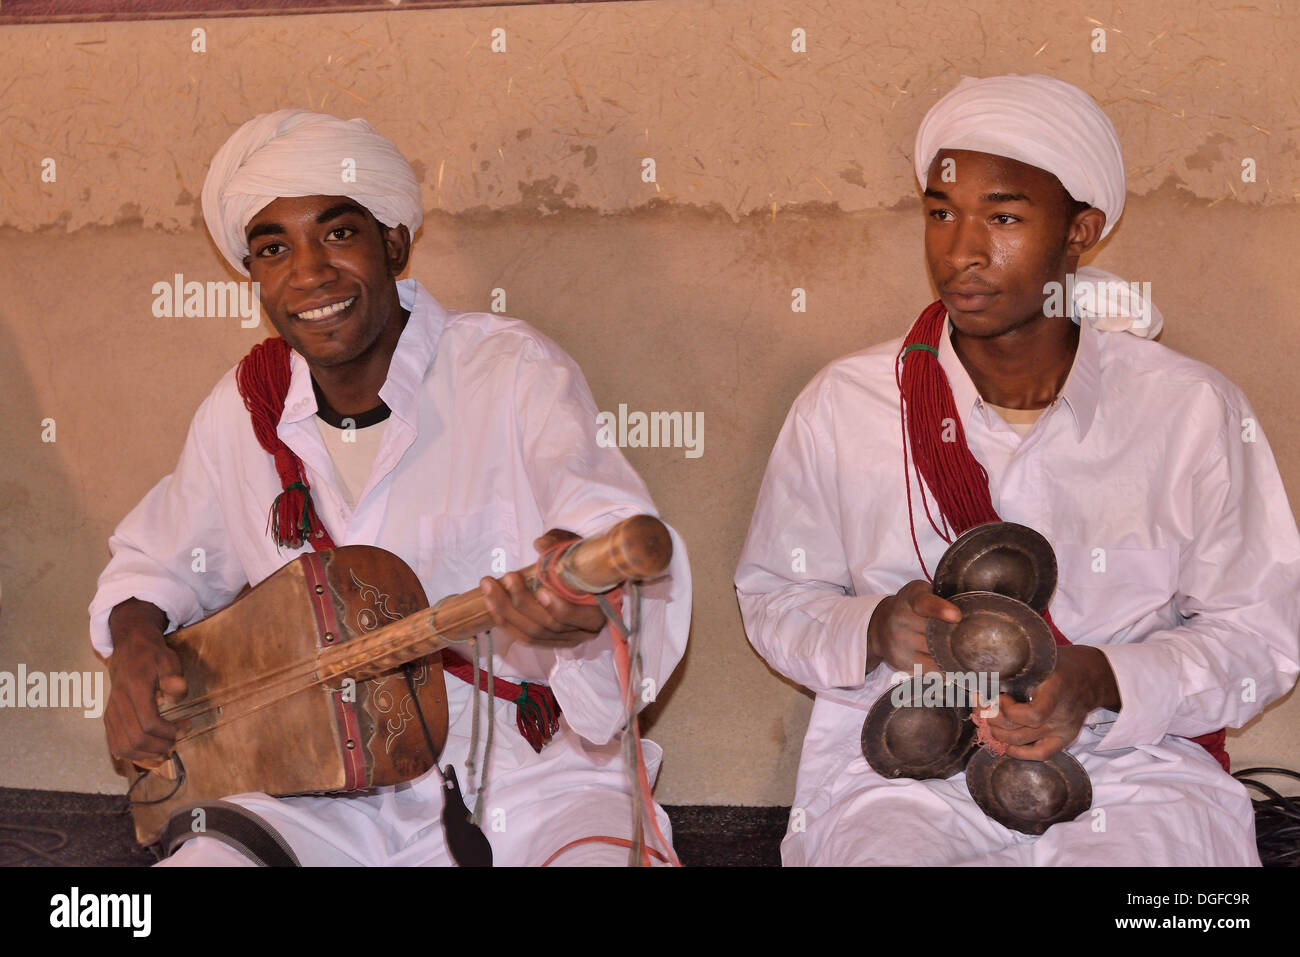 Musiciens Gnaoua, l'un jouer a Sintir, l'autre un Qarqaba, Merzouga, Maroc, région de Meknès-Tafilalet Banque D'Images